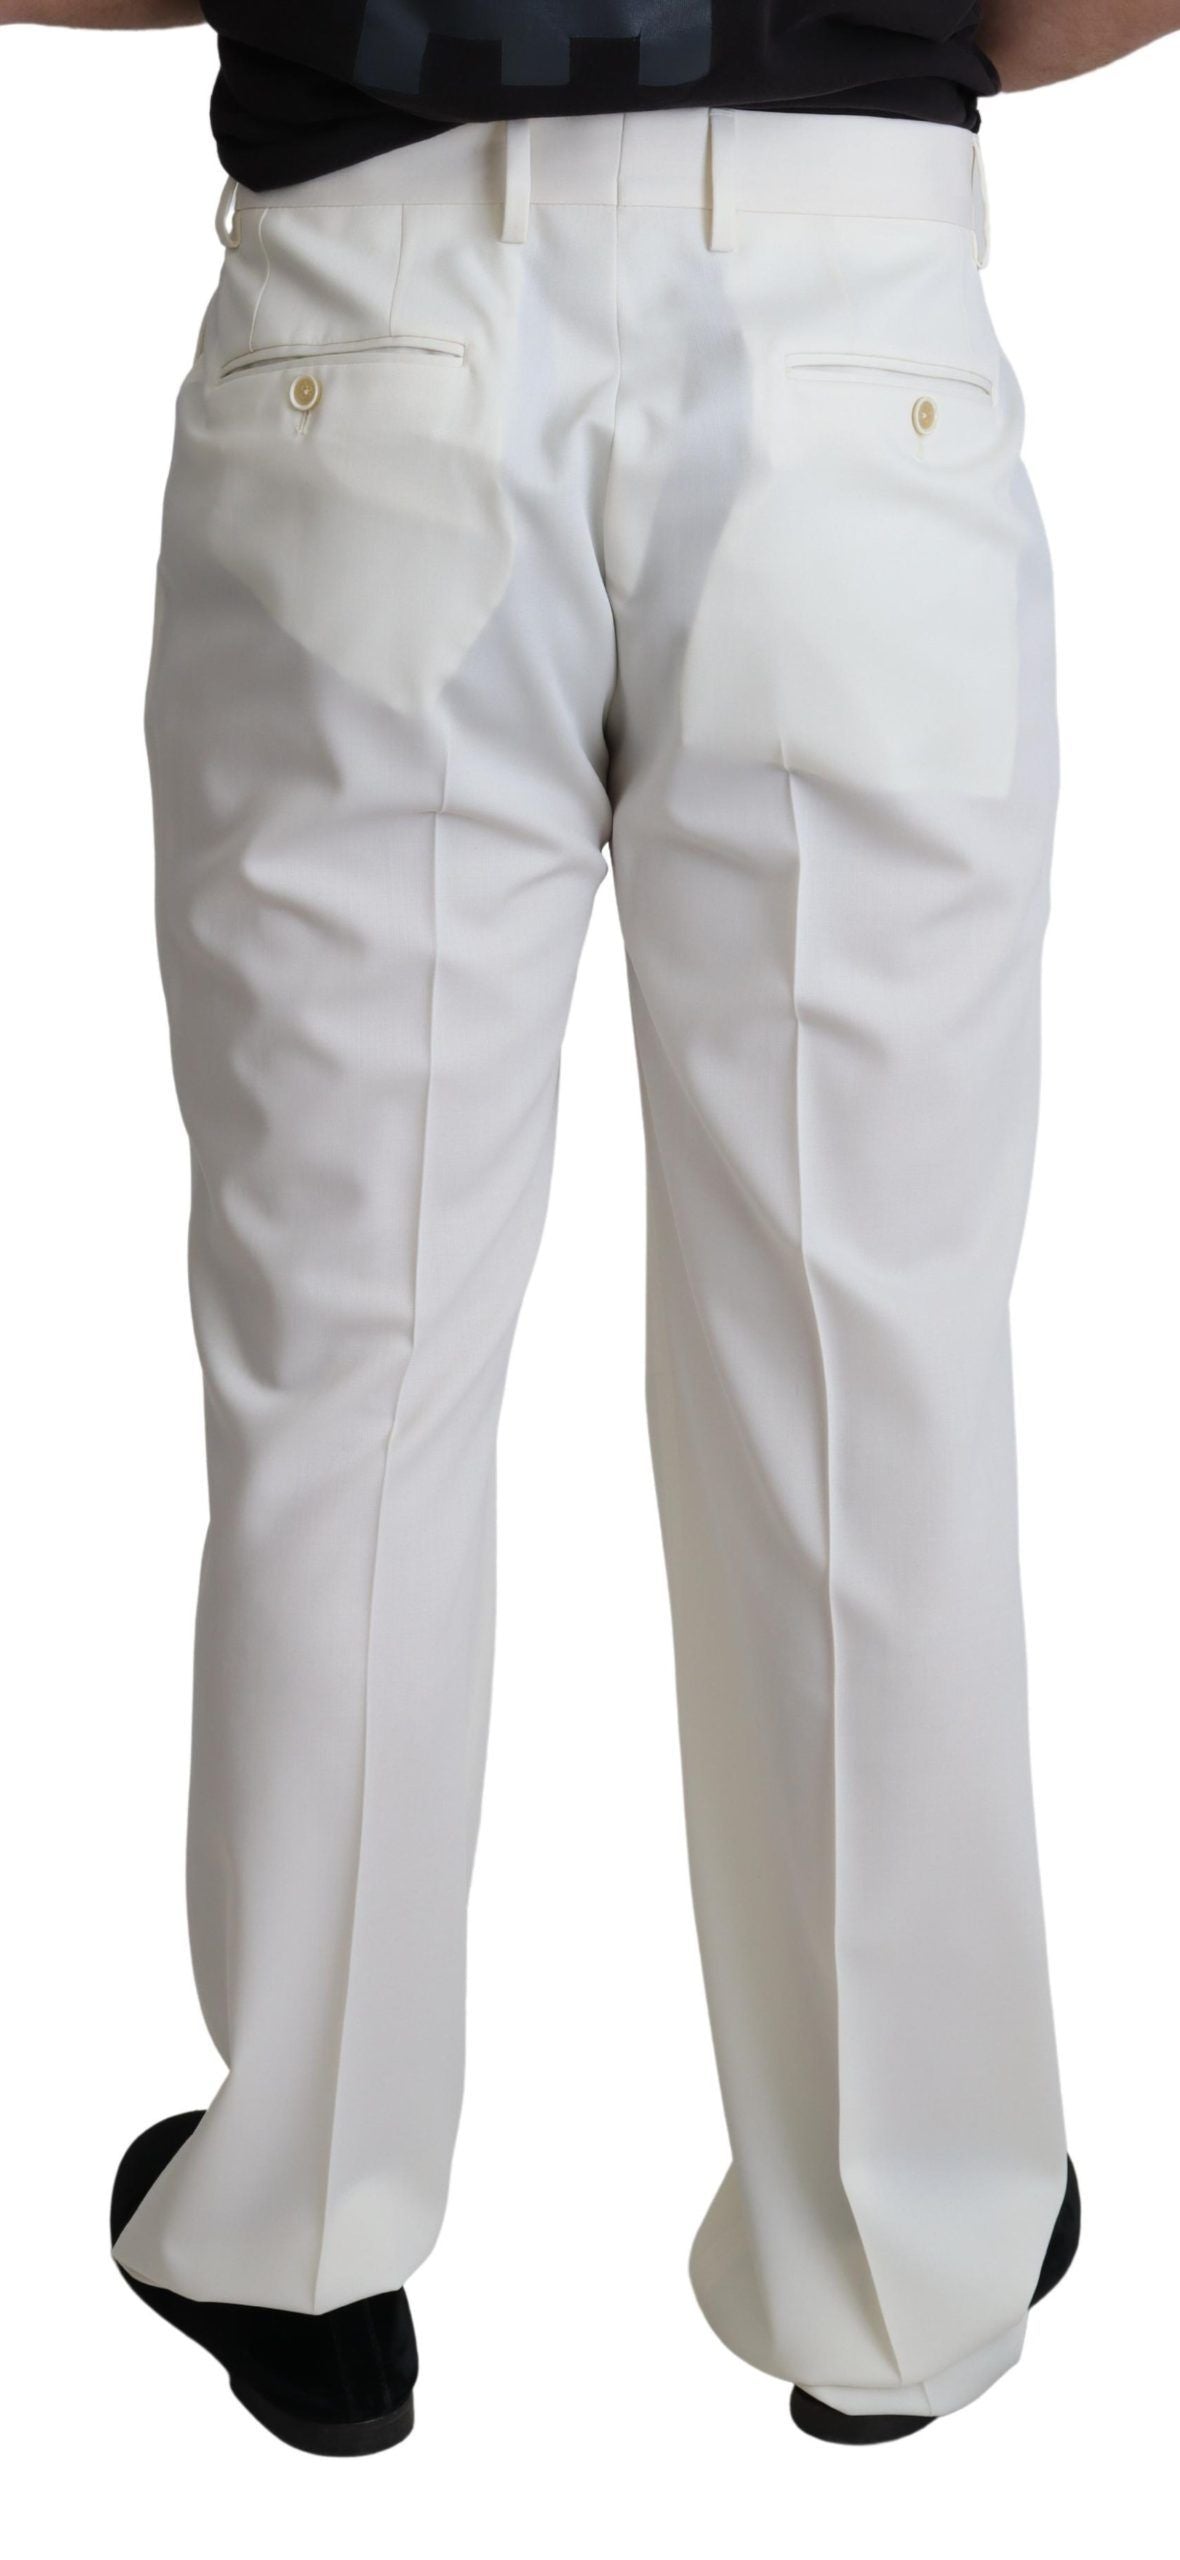 Elegant White Wool Dress Trousers for Men